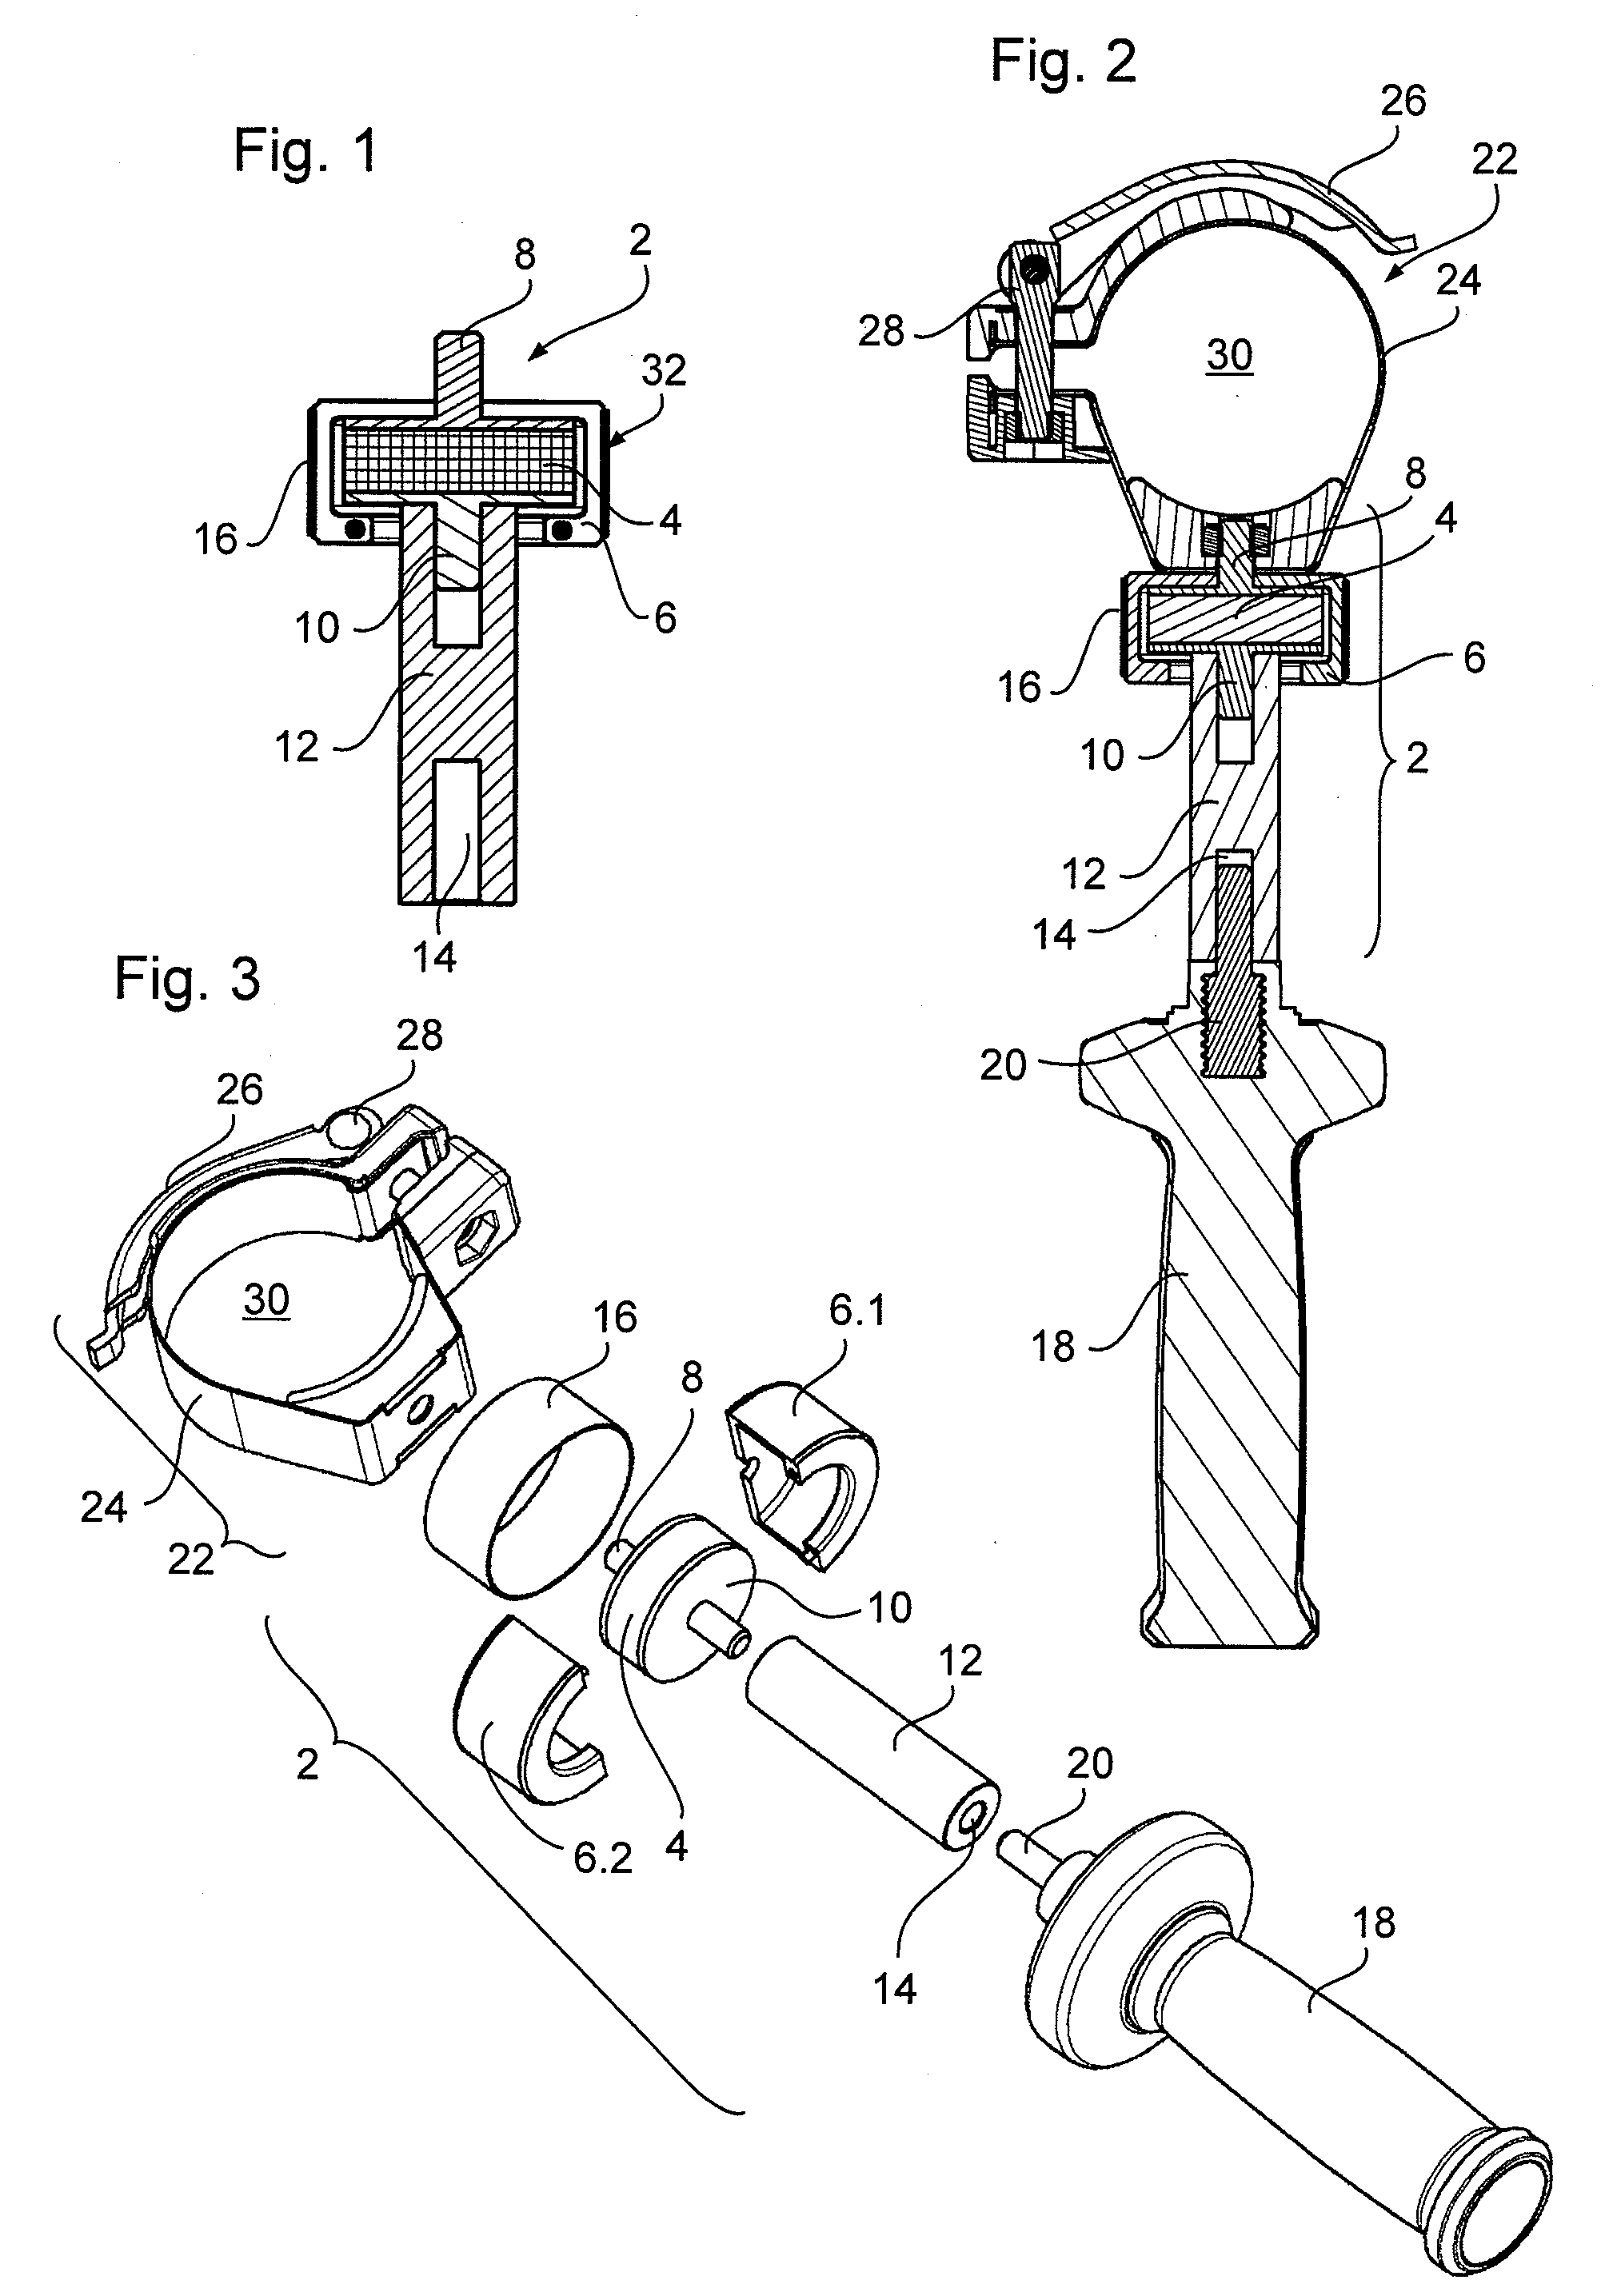 Vibration-damped holder for additional handle